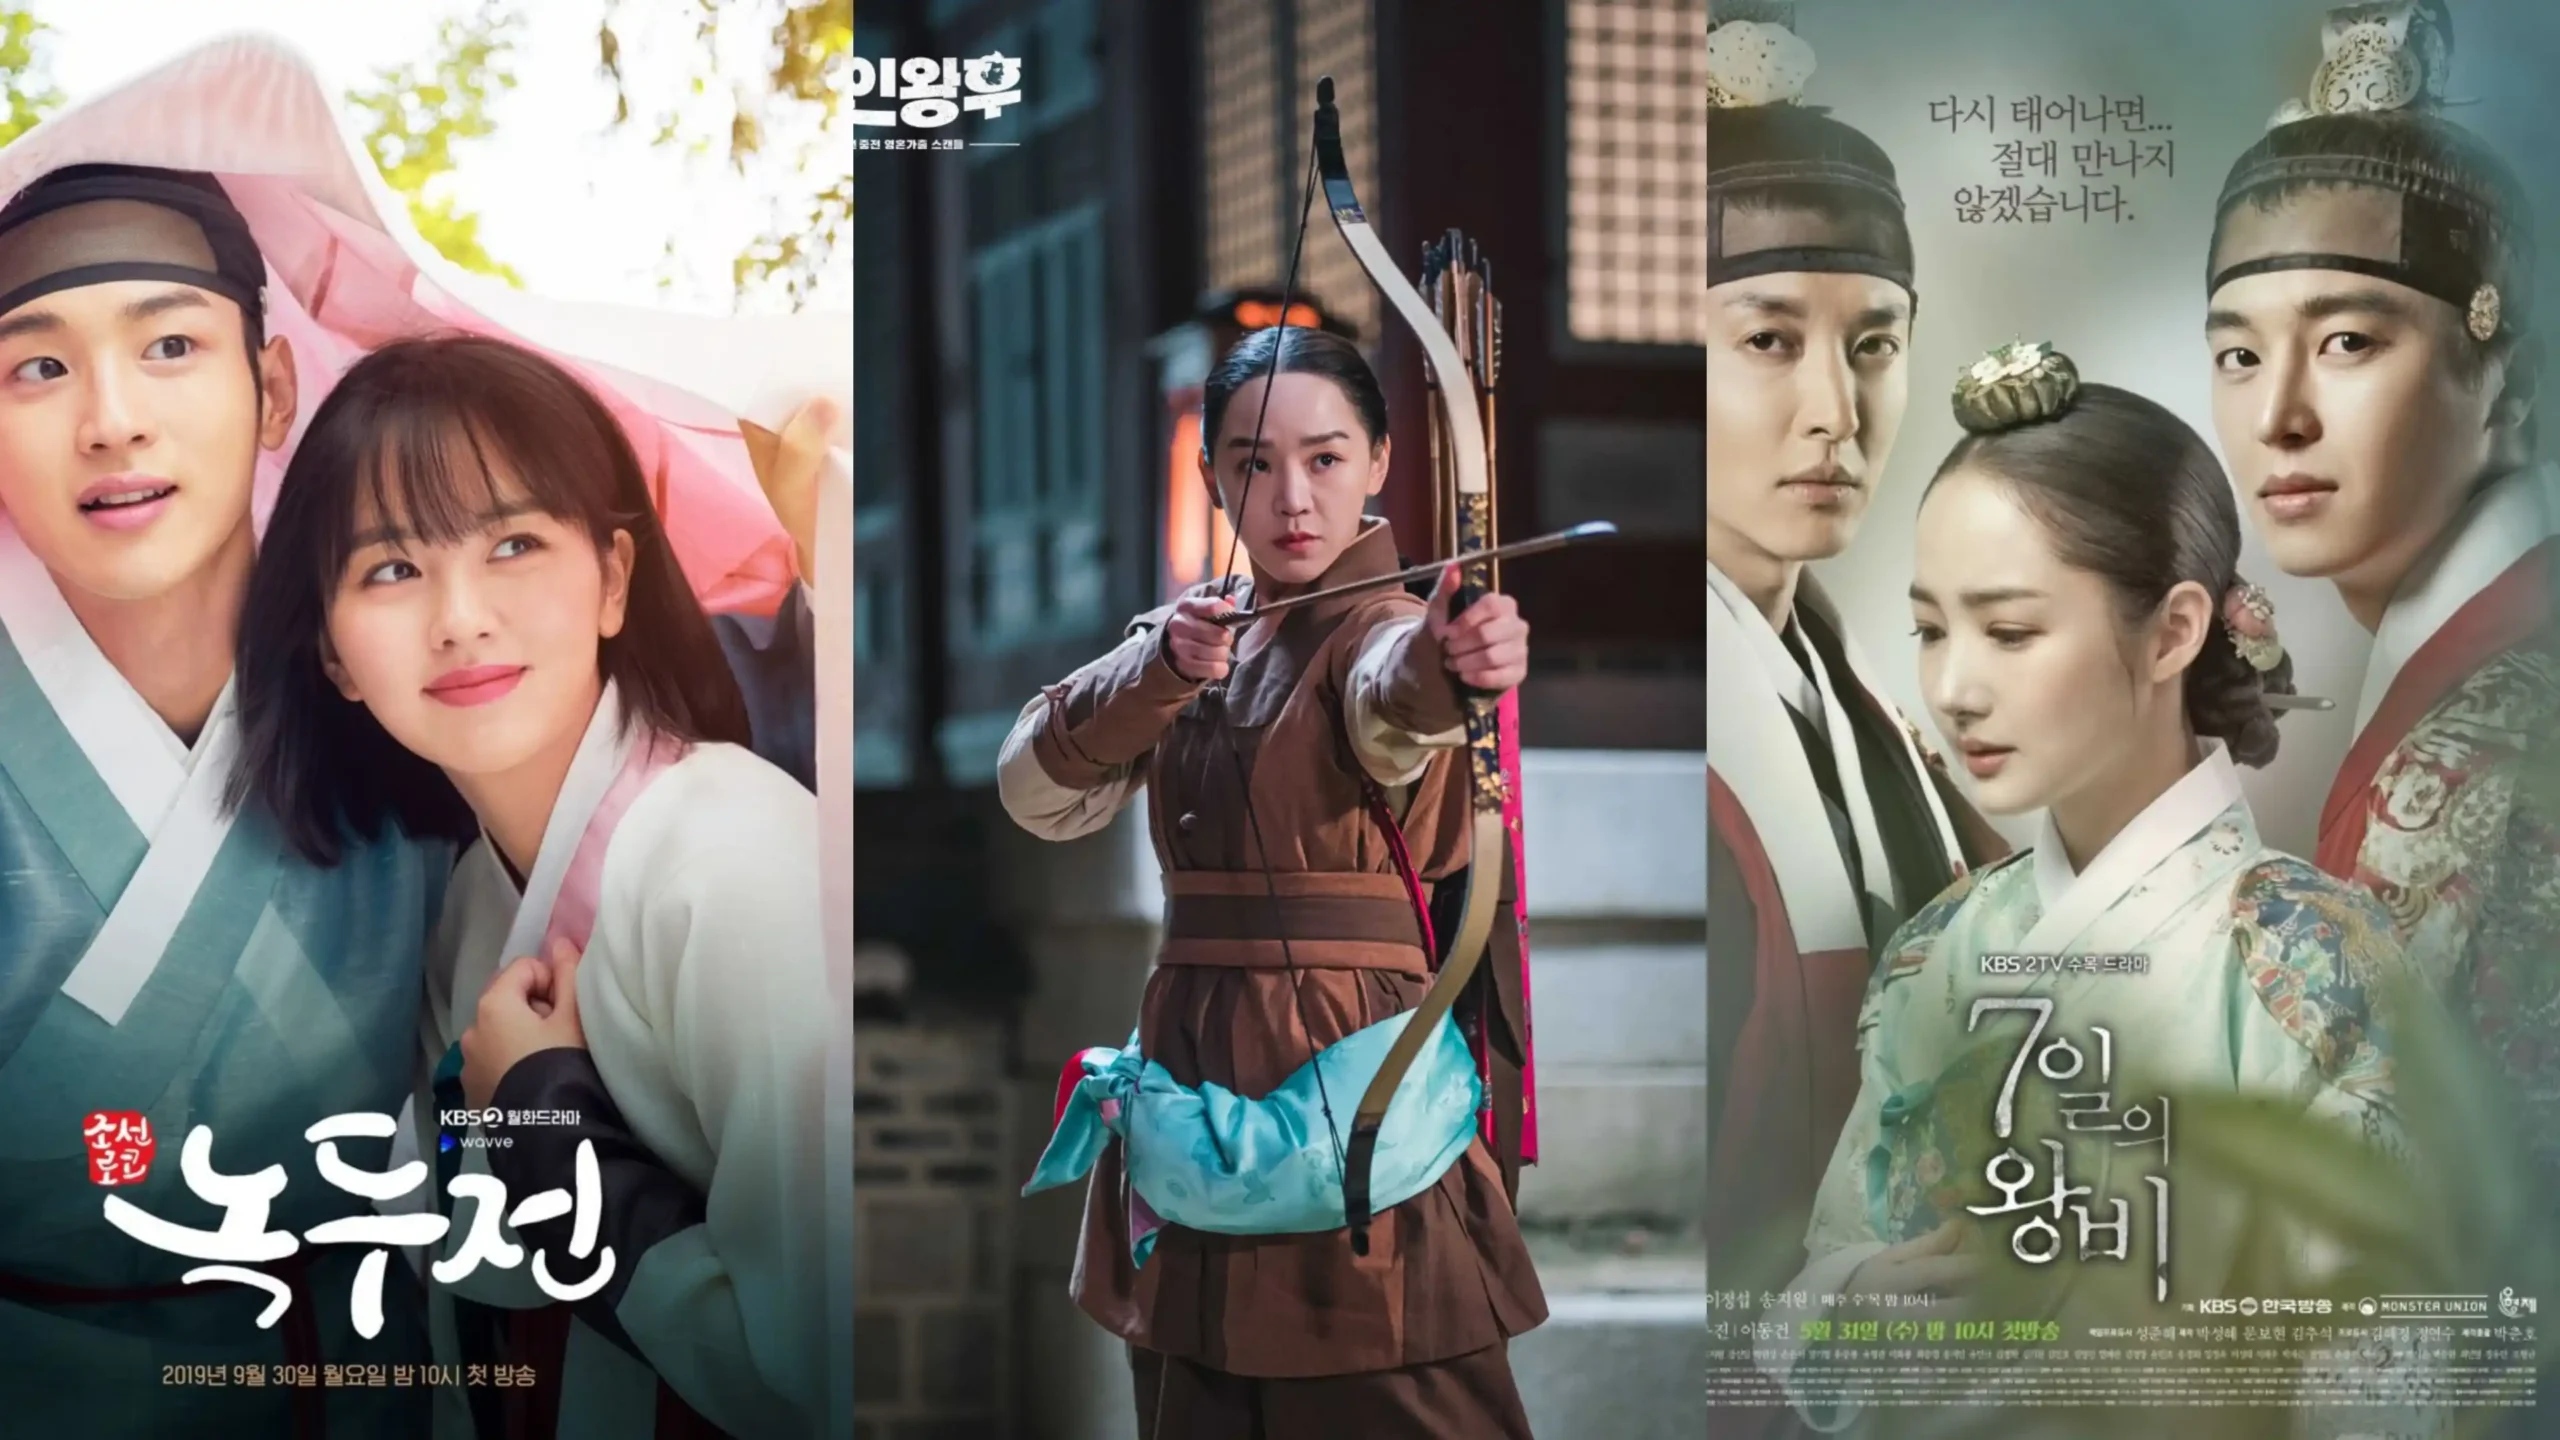 Historical Korean drama on Netflix scaled